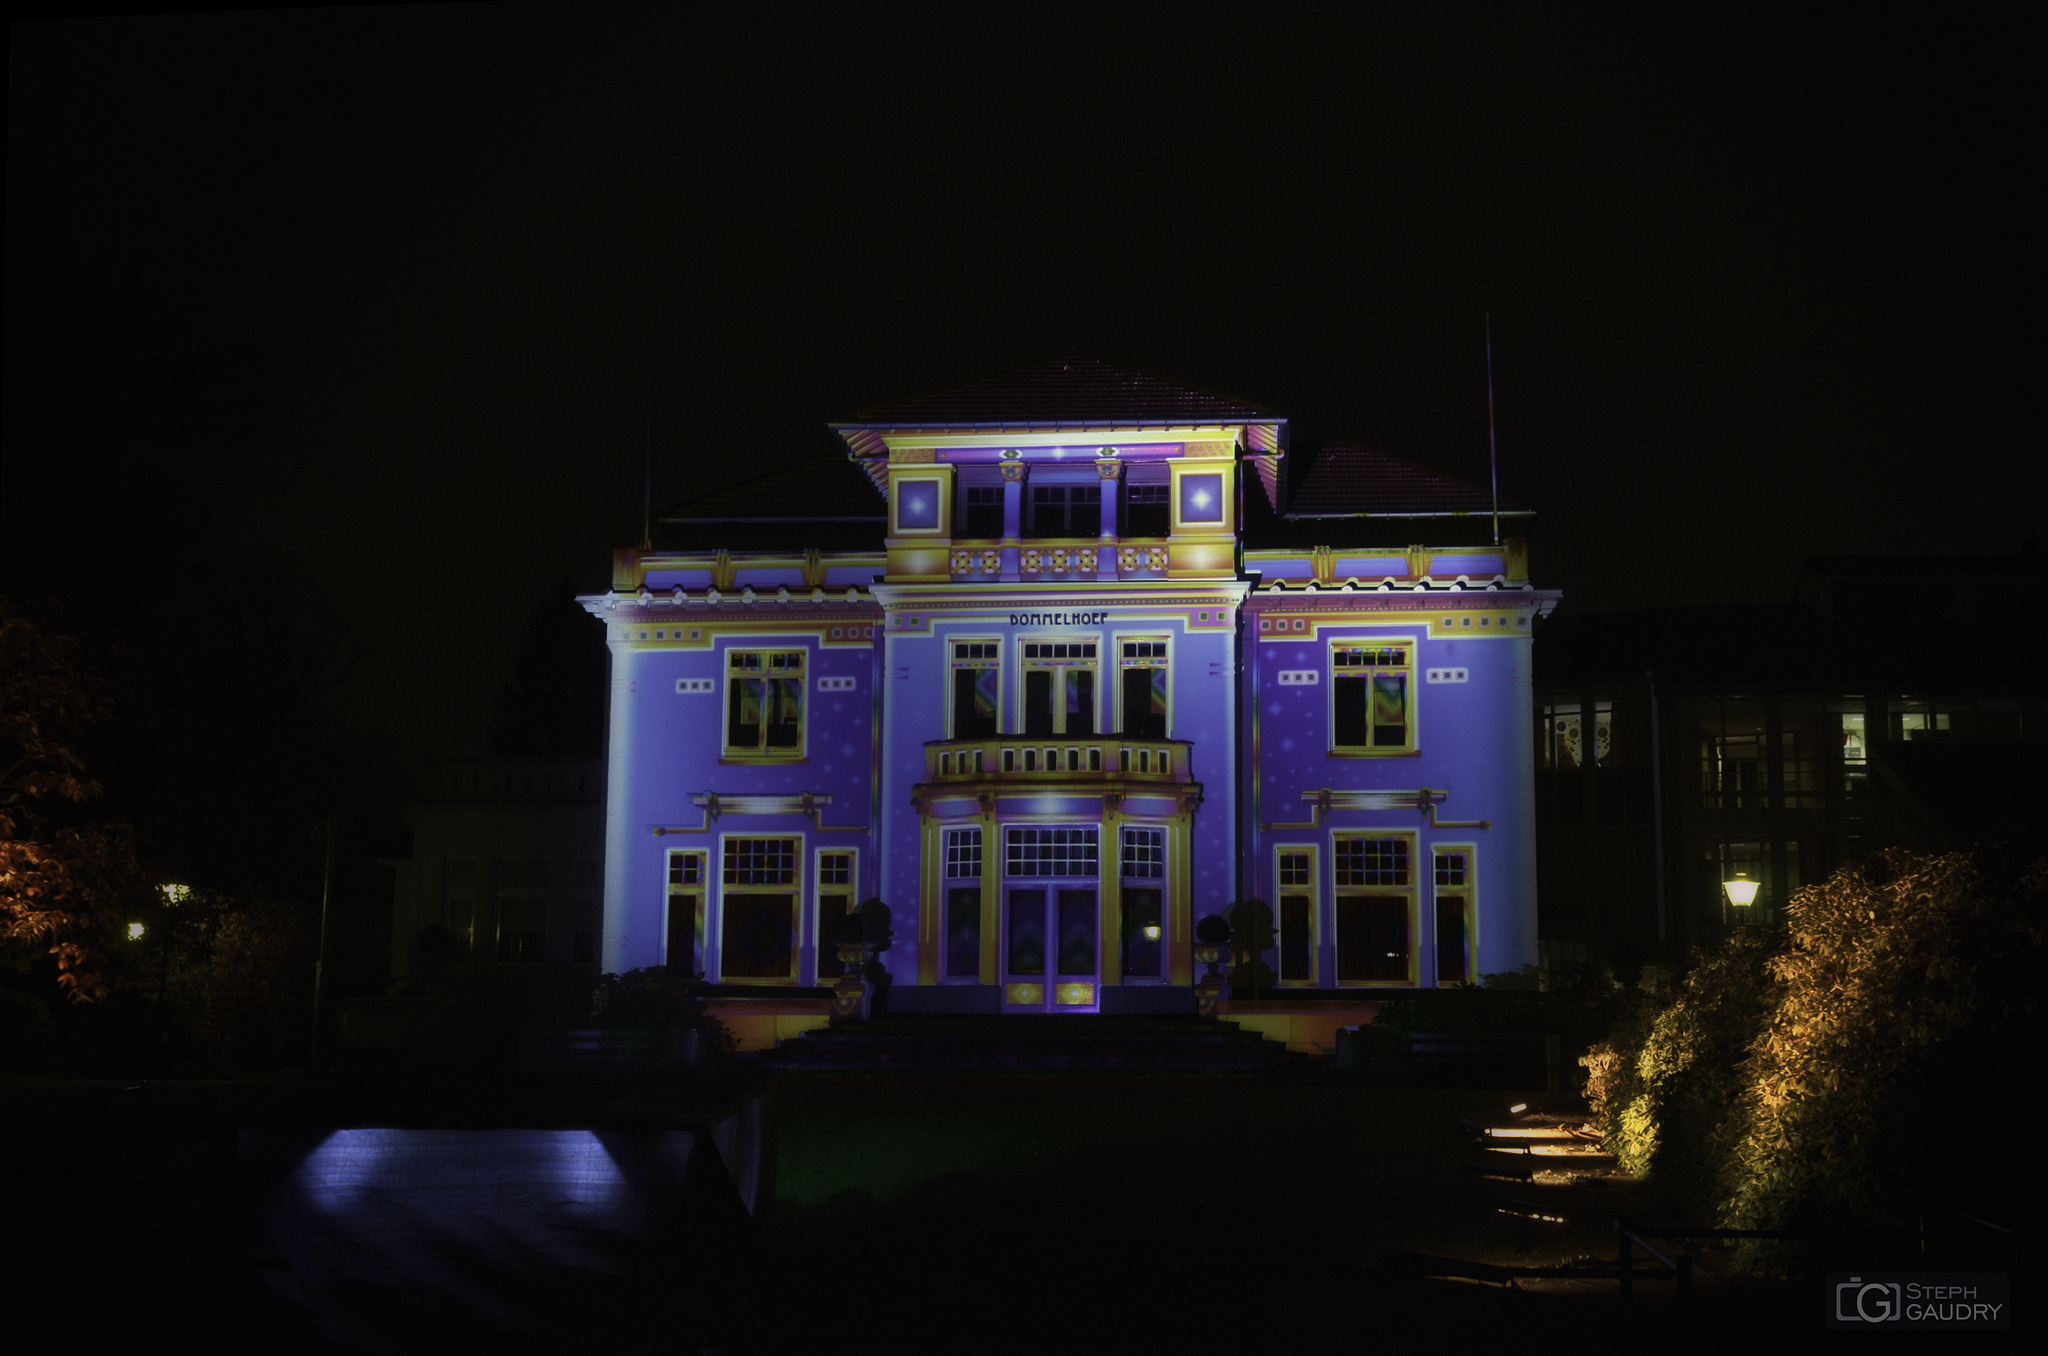 Eindhoven / Eindhoven glow 2013 - CHROMOLITHE (v1)